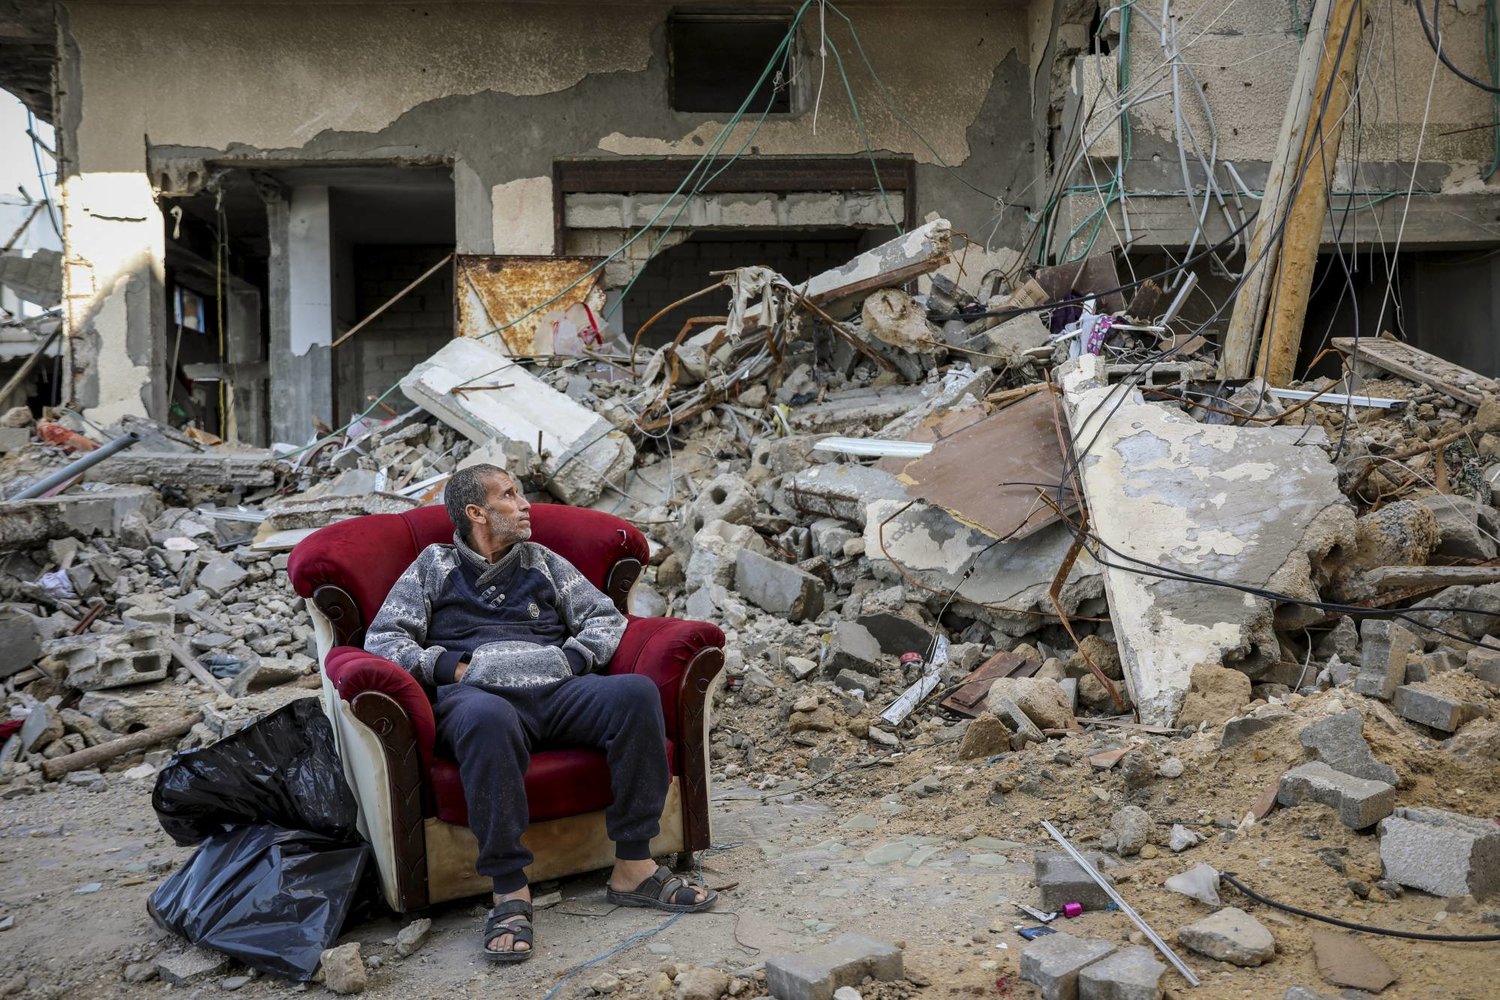  فلسطيني يجلس خارج مبنى مدمر في مدينة غزة يوم أمس الأربعاء (ا.ب)
